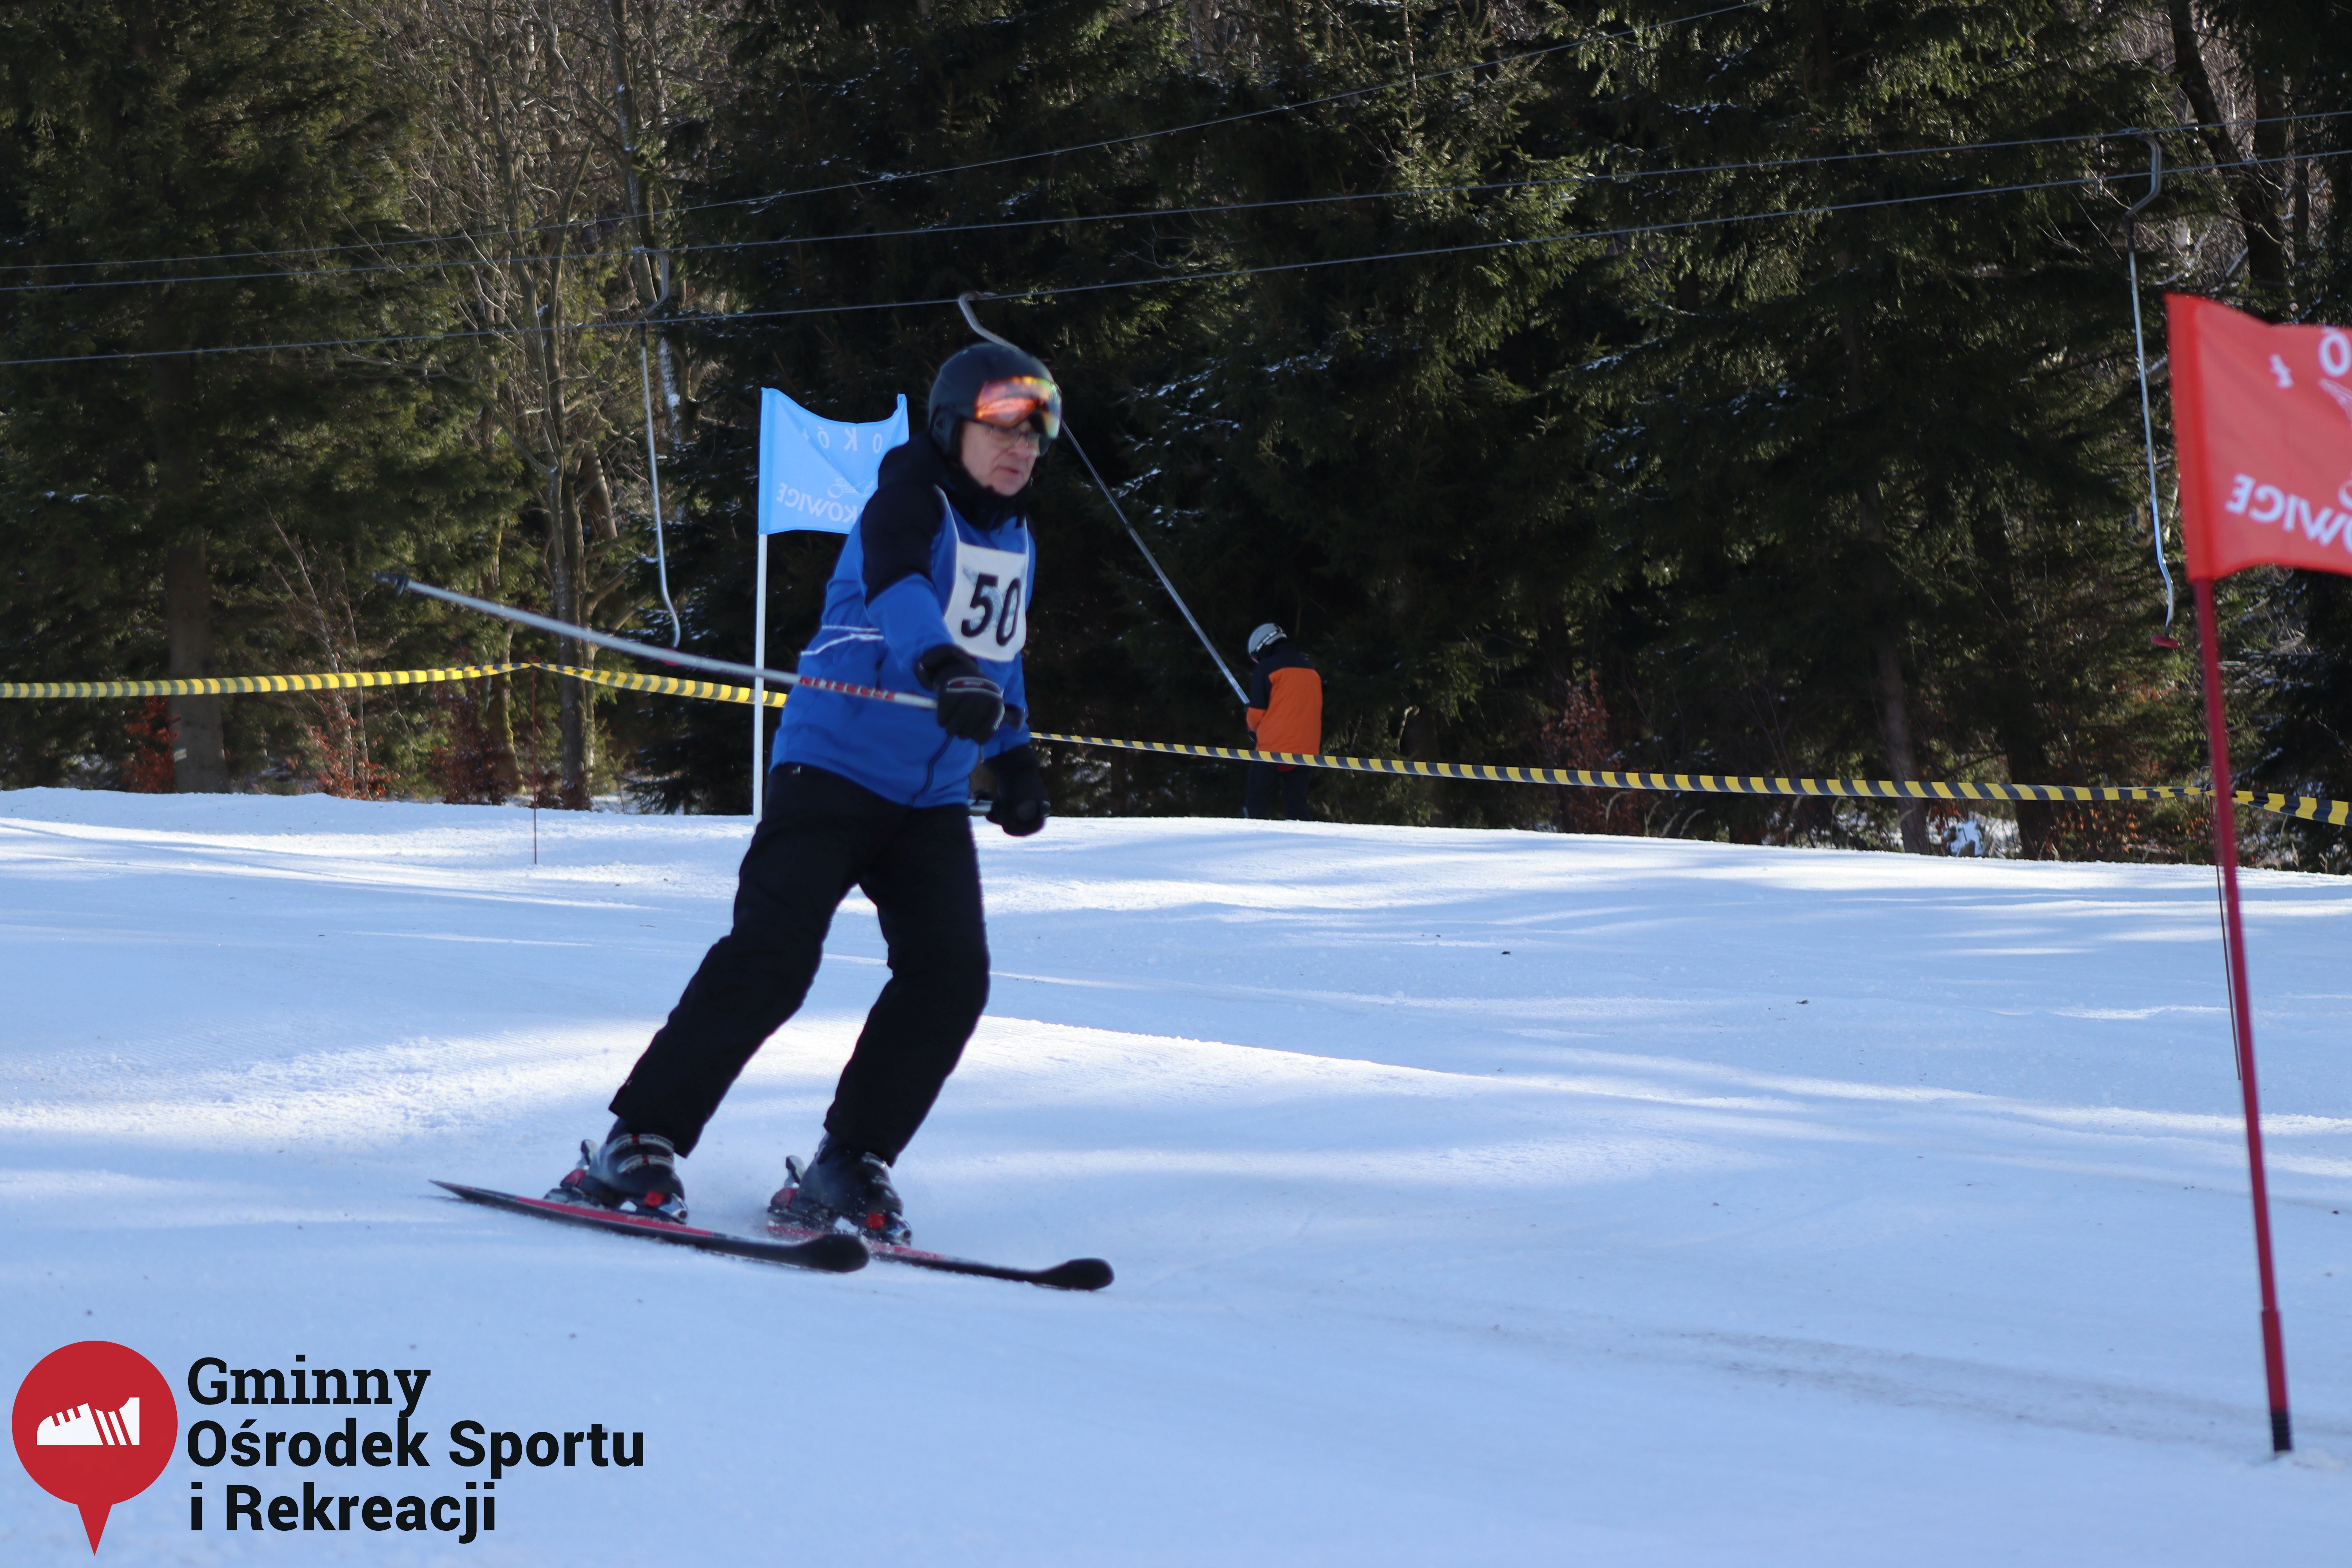 2022.02.12 - 18. Mistrzostwa Gminy Woszakowice w narciarstwie033.jpg - 1,91 MB